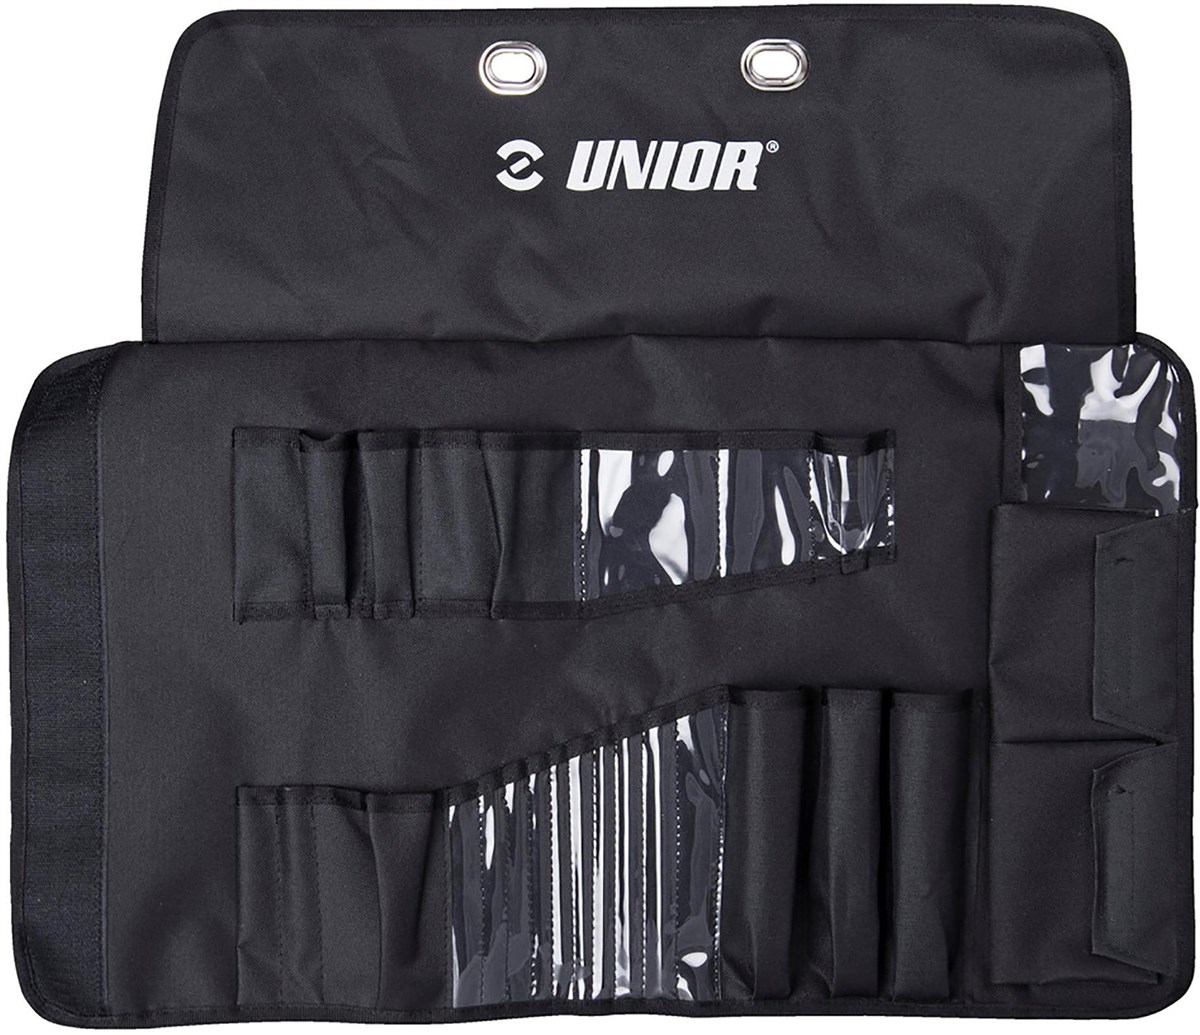 Unior Pro Tool Wrap product image